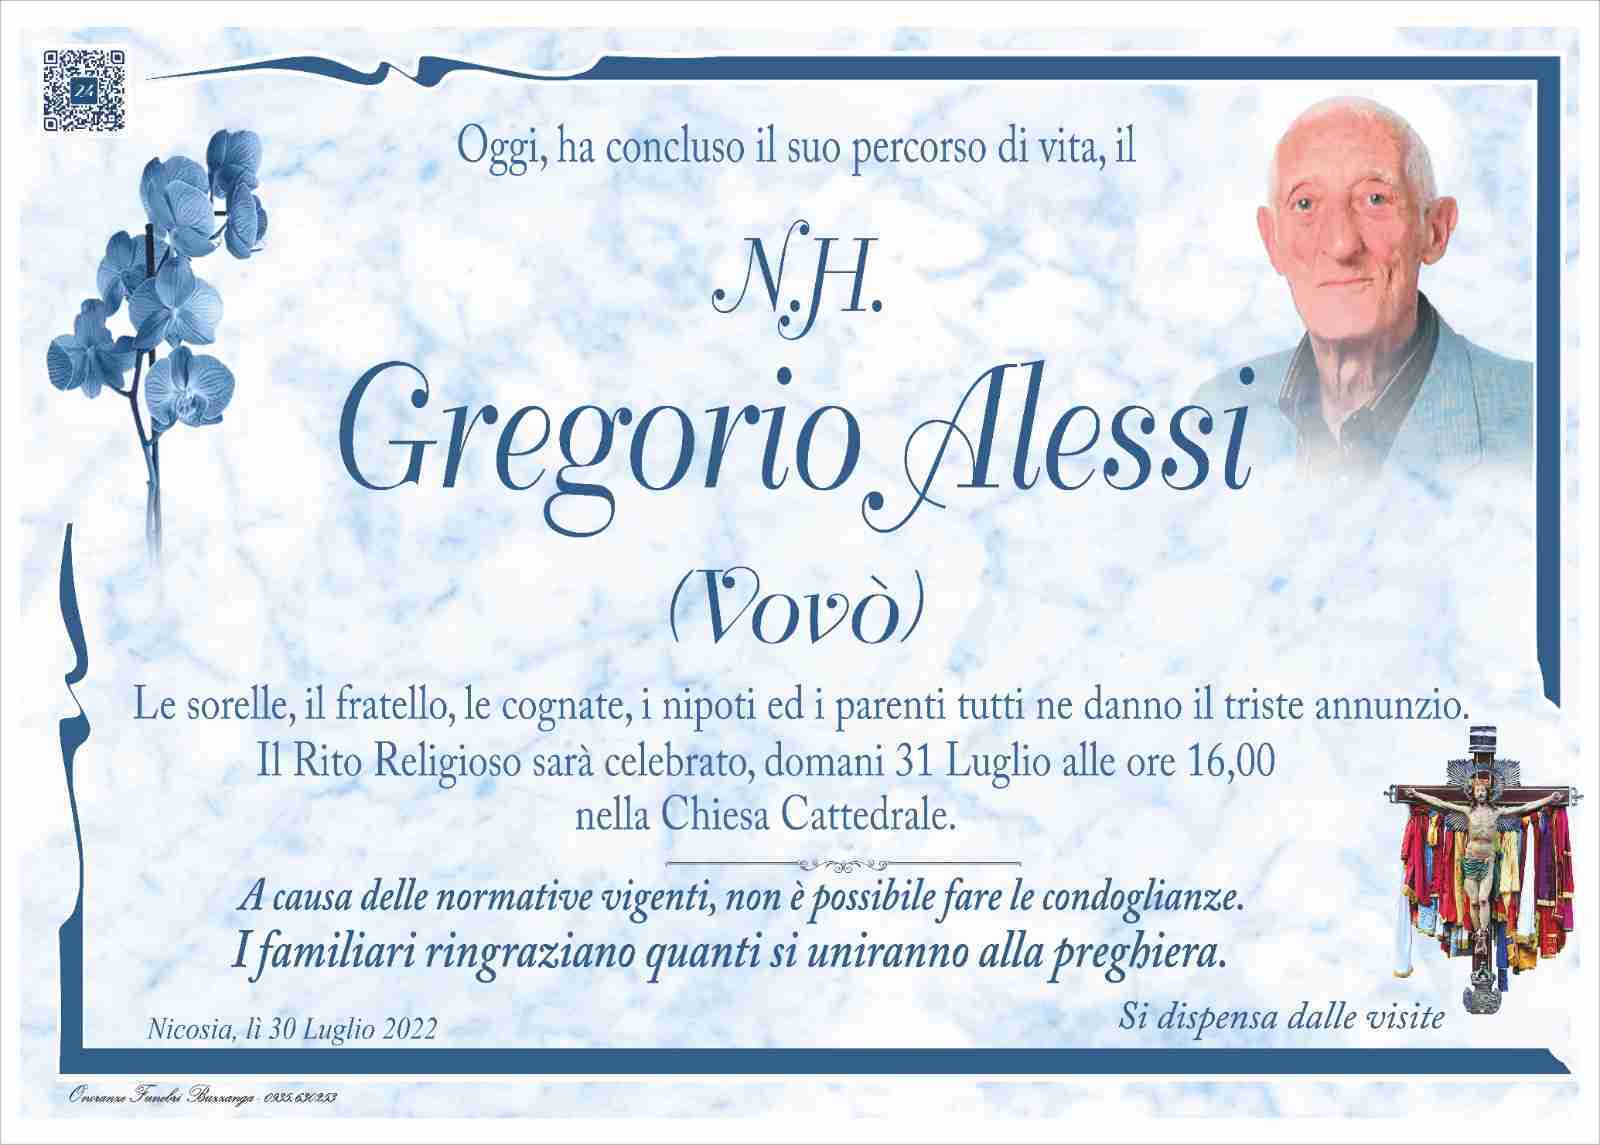 Gregorio Alessi